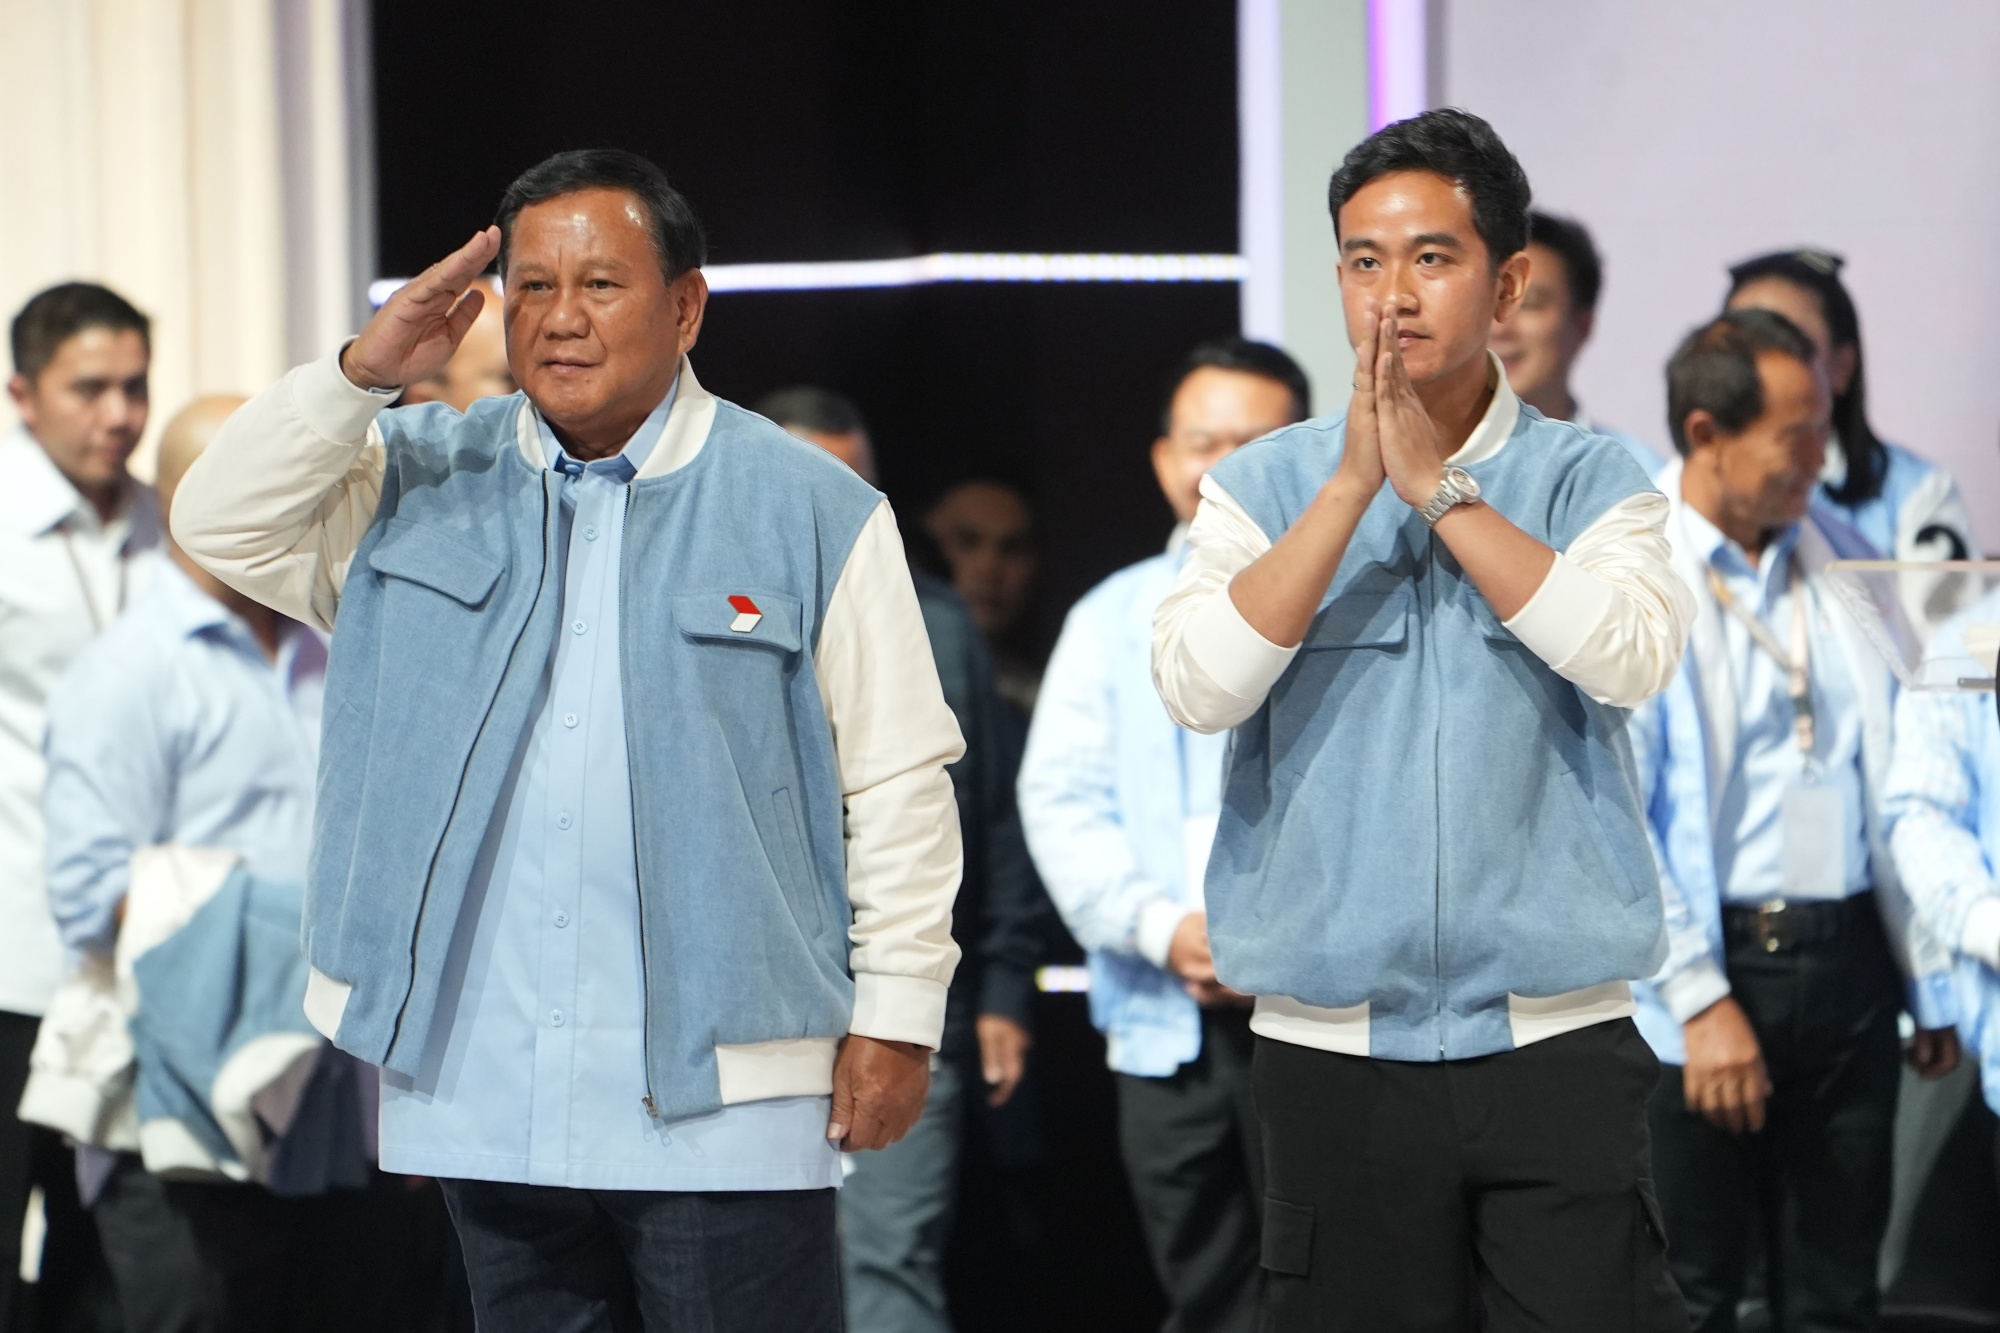 Endonezya’nın yeni başkanı Prabowo Subianto oldu